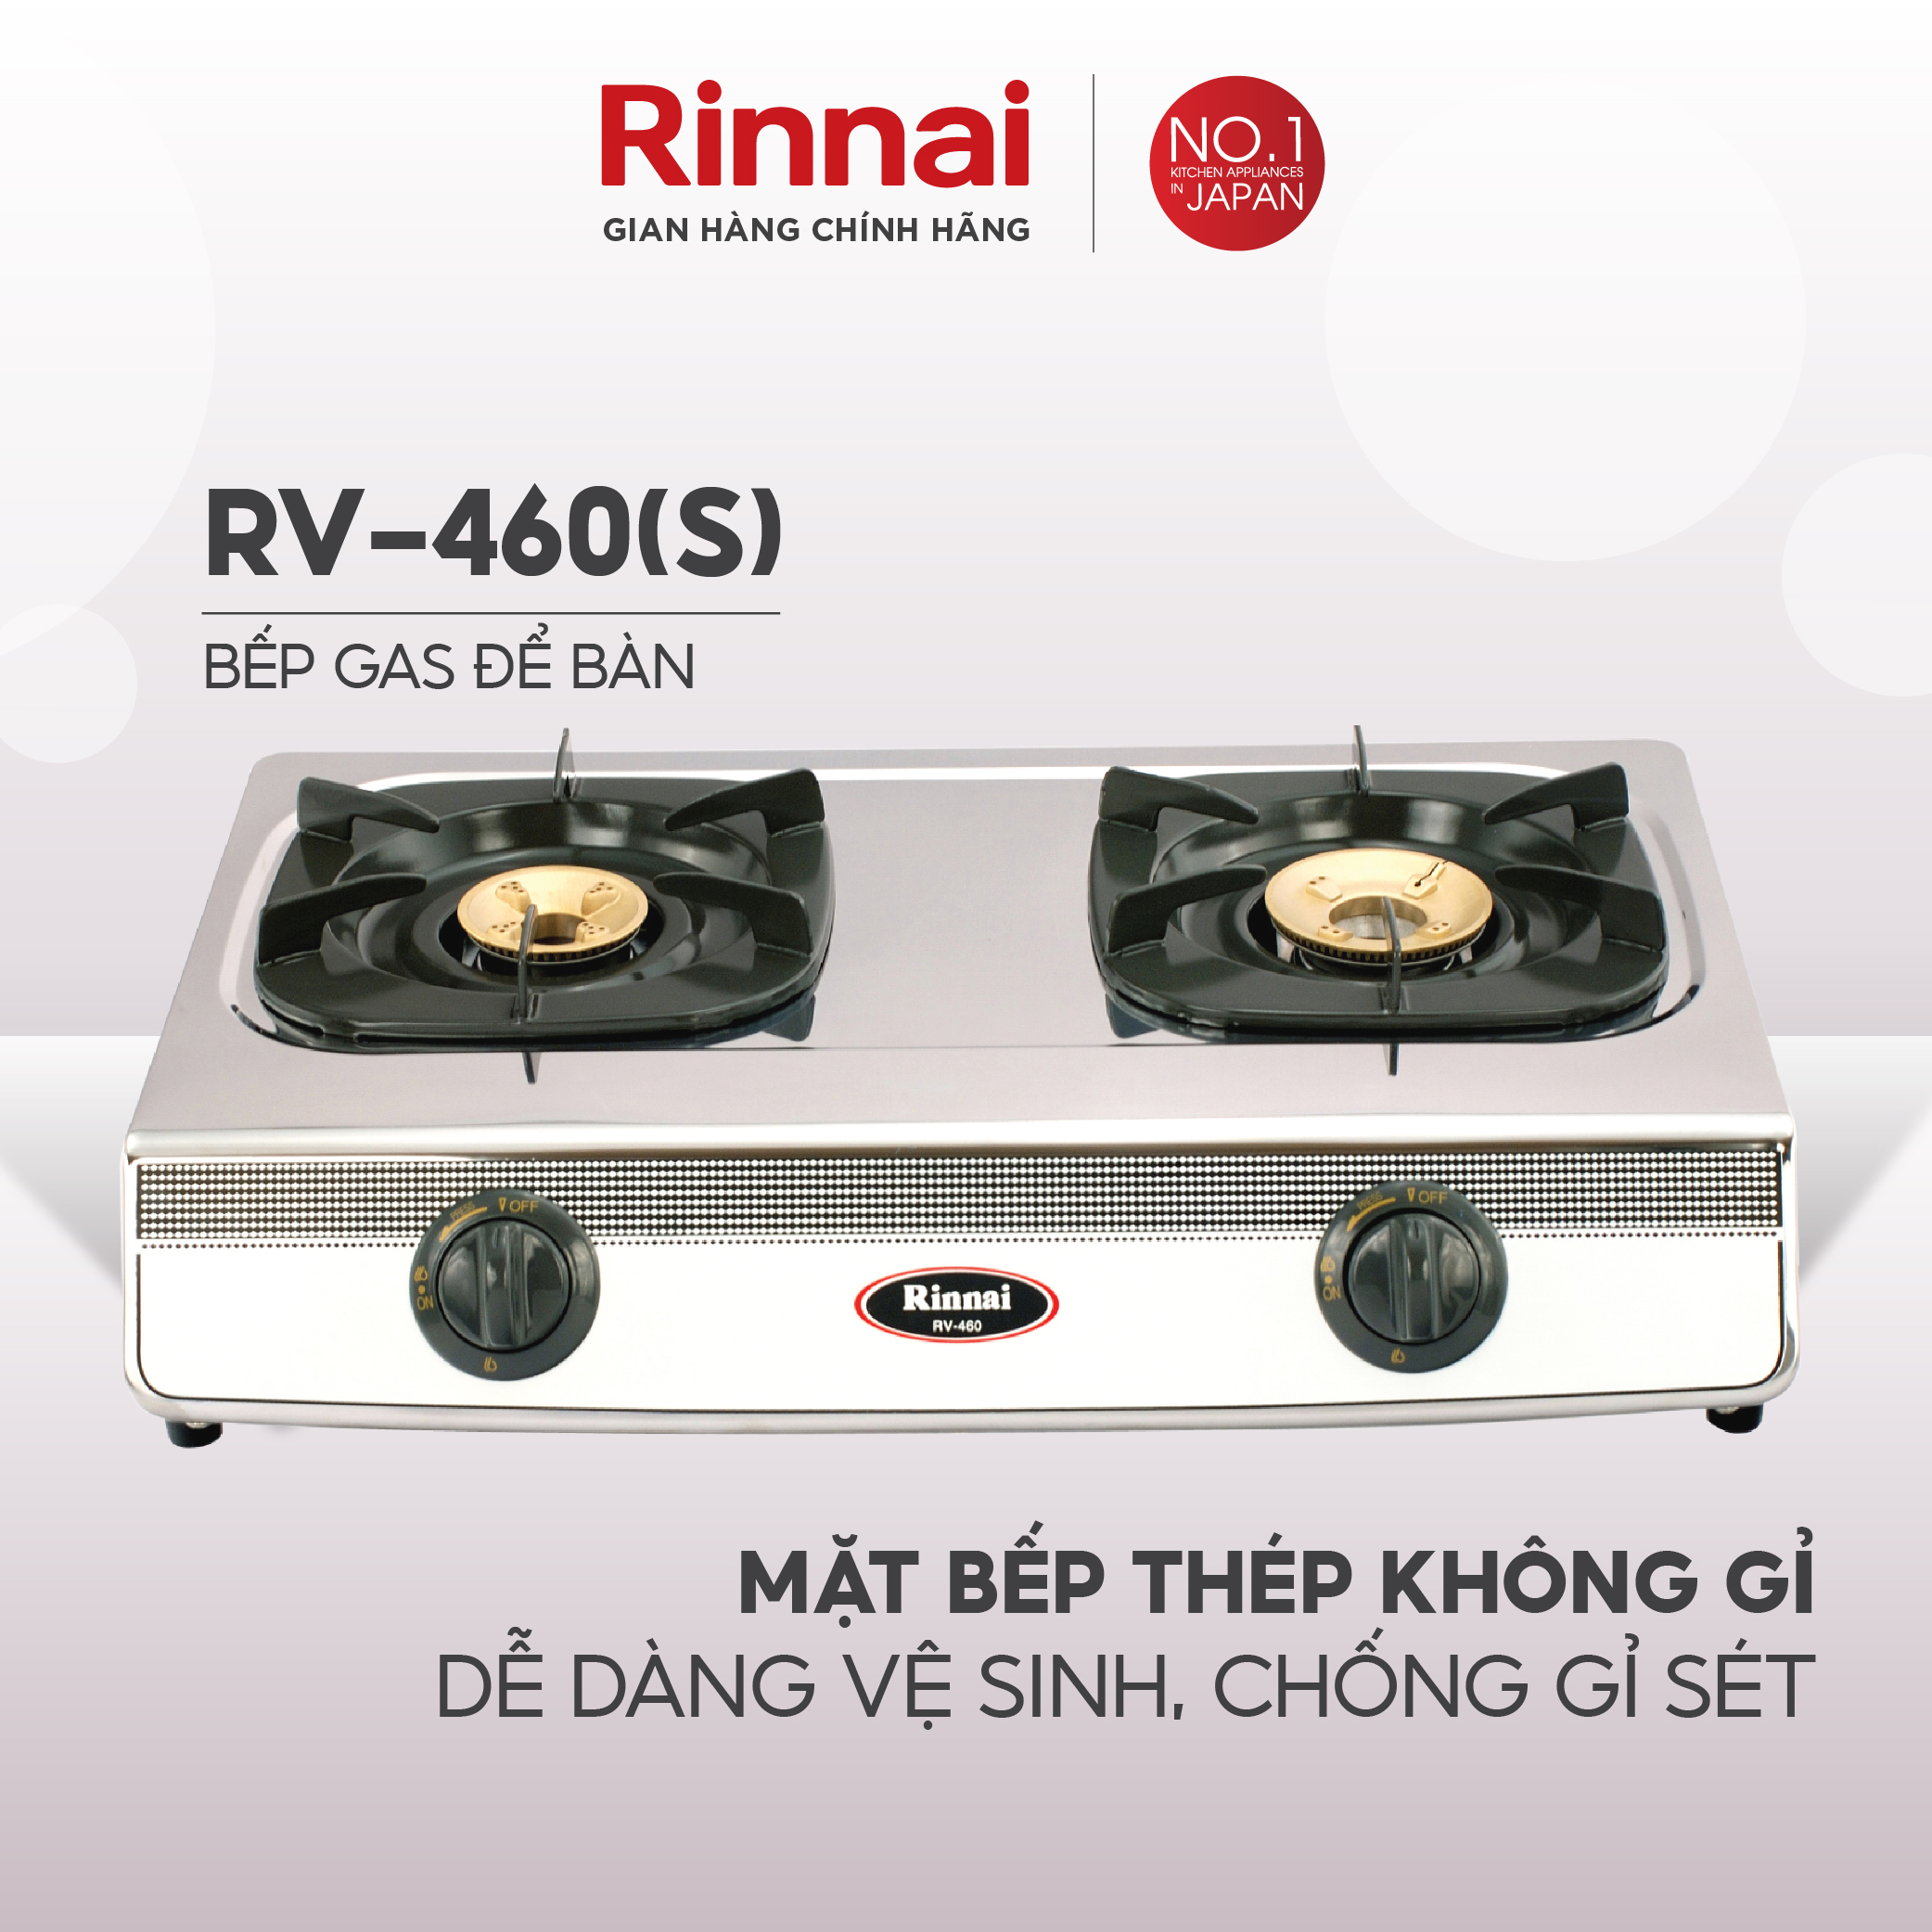 Bếp gas dương Rinnai RV-460(S) mặt bếp inox và kiềng bếp men - Hàng chính hãng.